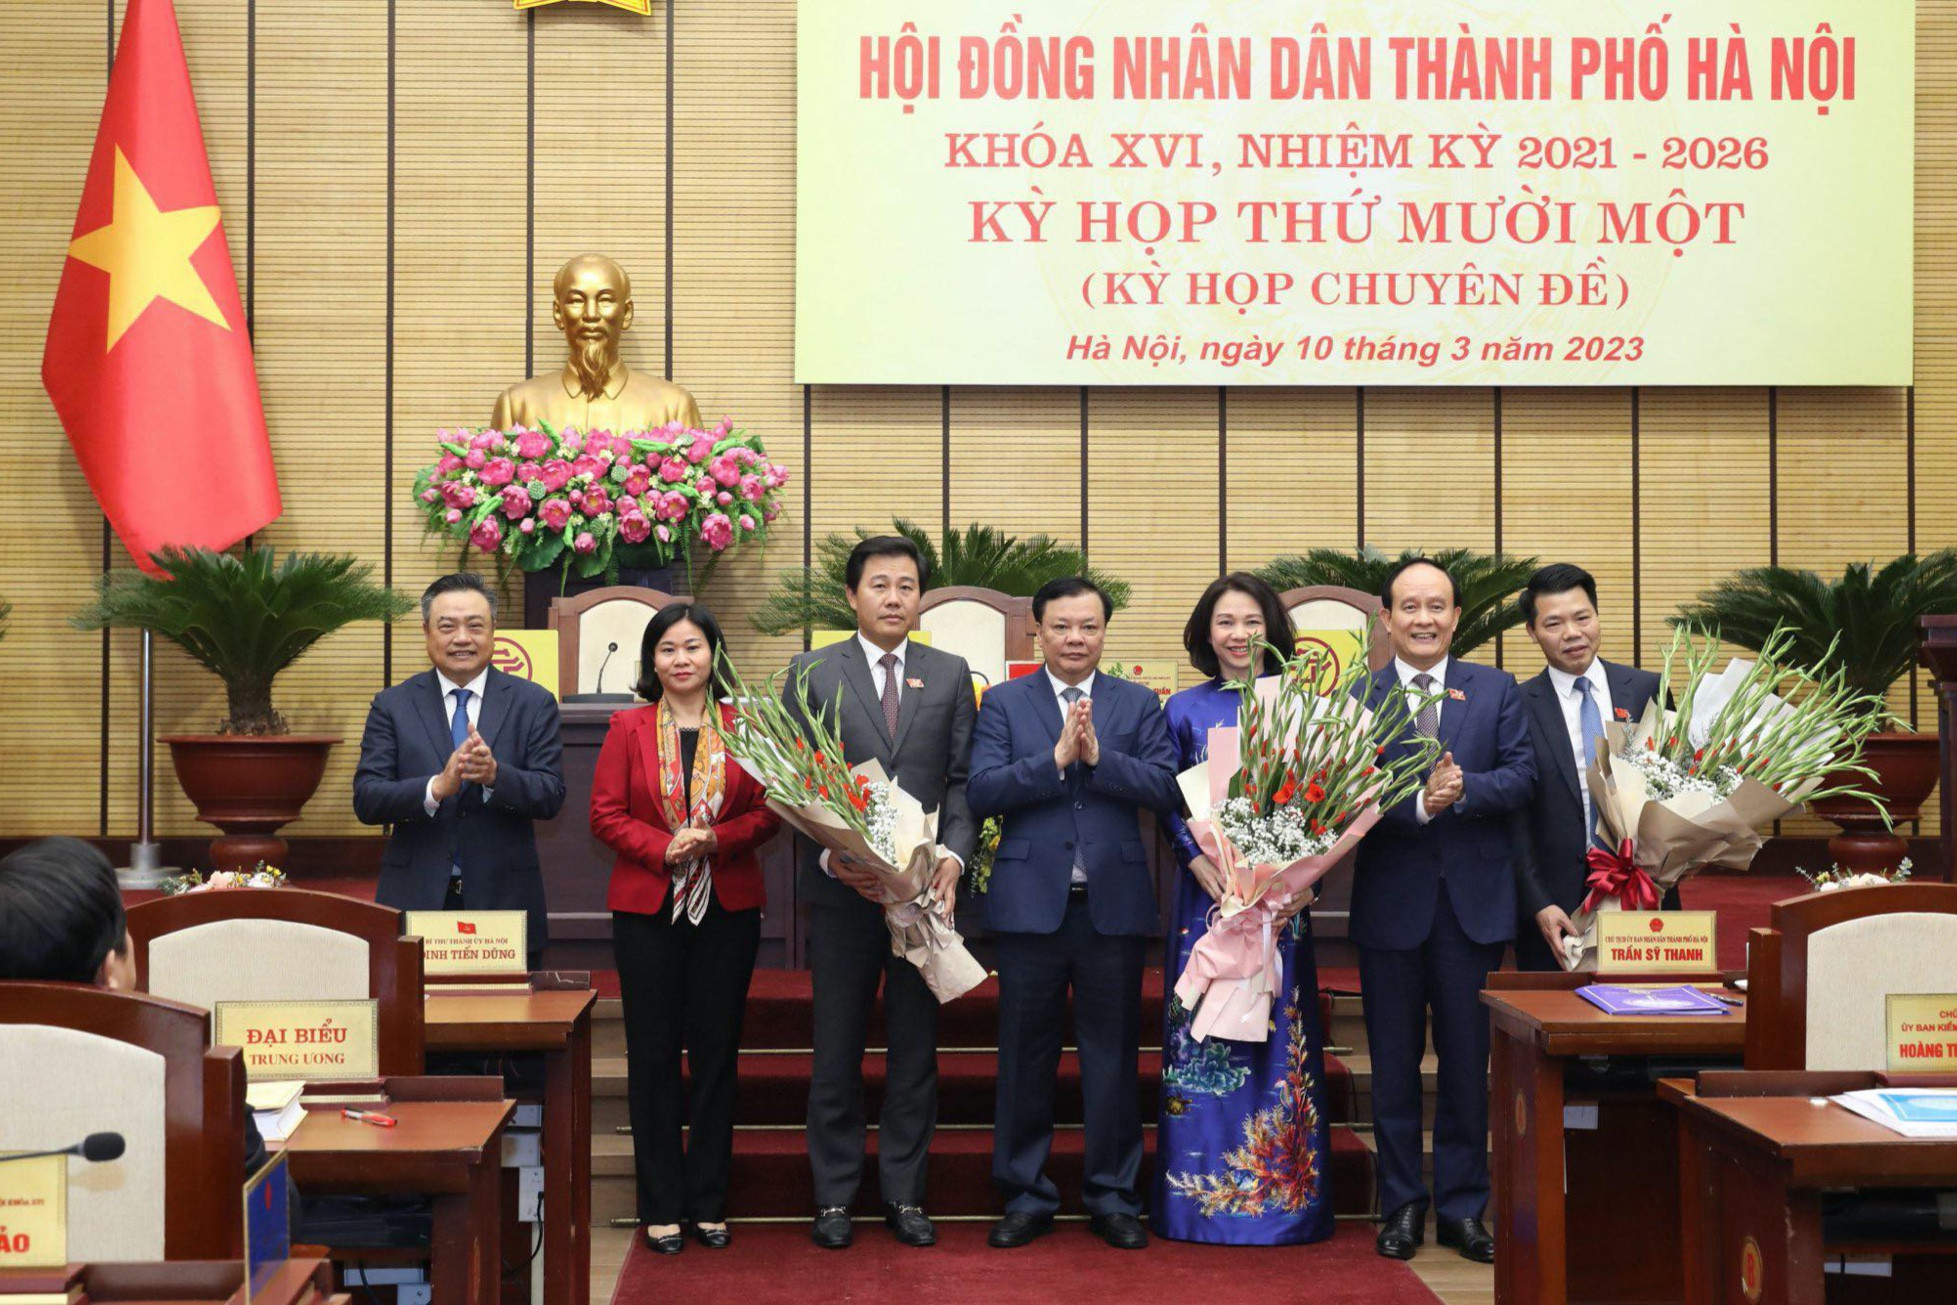 Hà Nội phân công nhiệm vụ Chủ tịch UBND TP Trần Sỹ Thanh và 6 phó chủ tịch